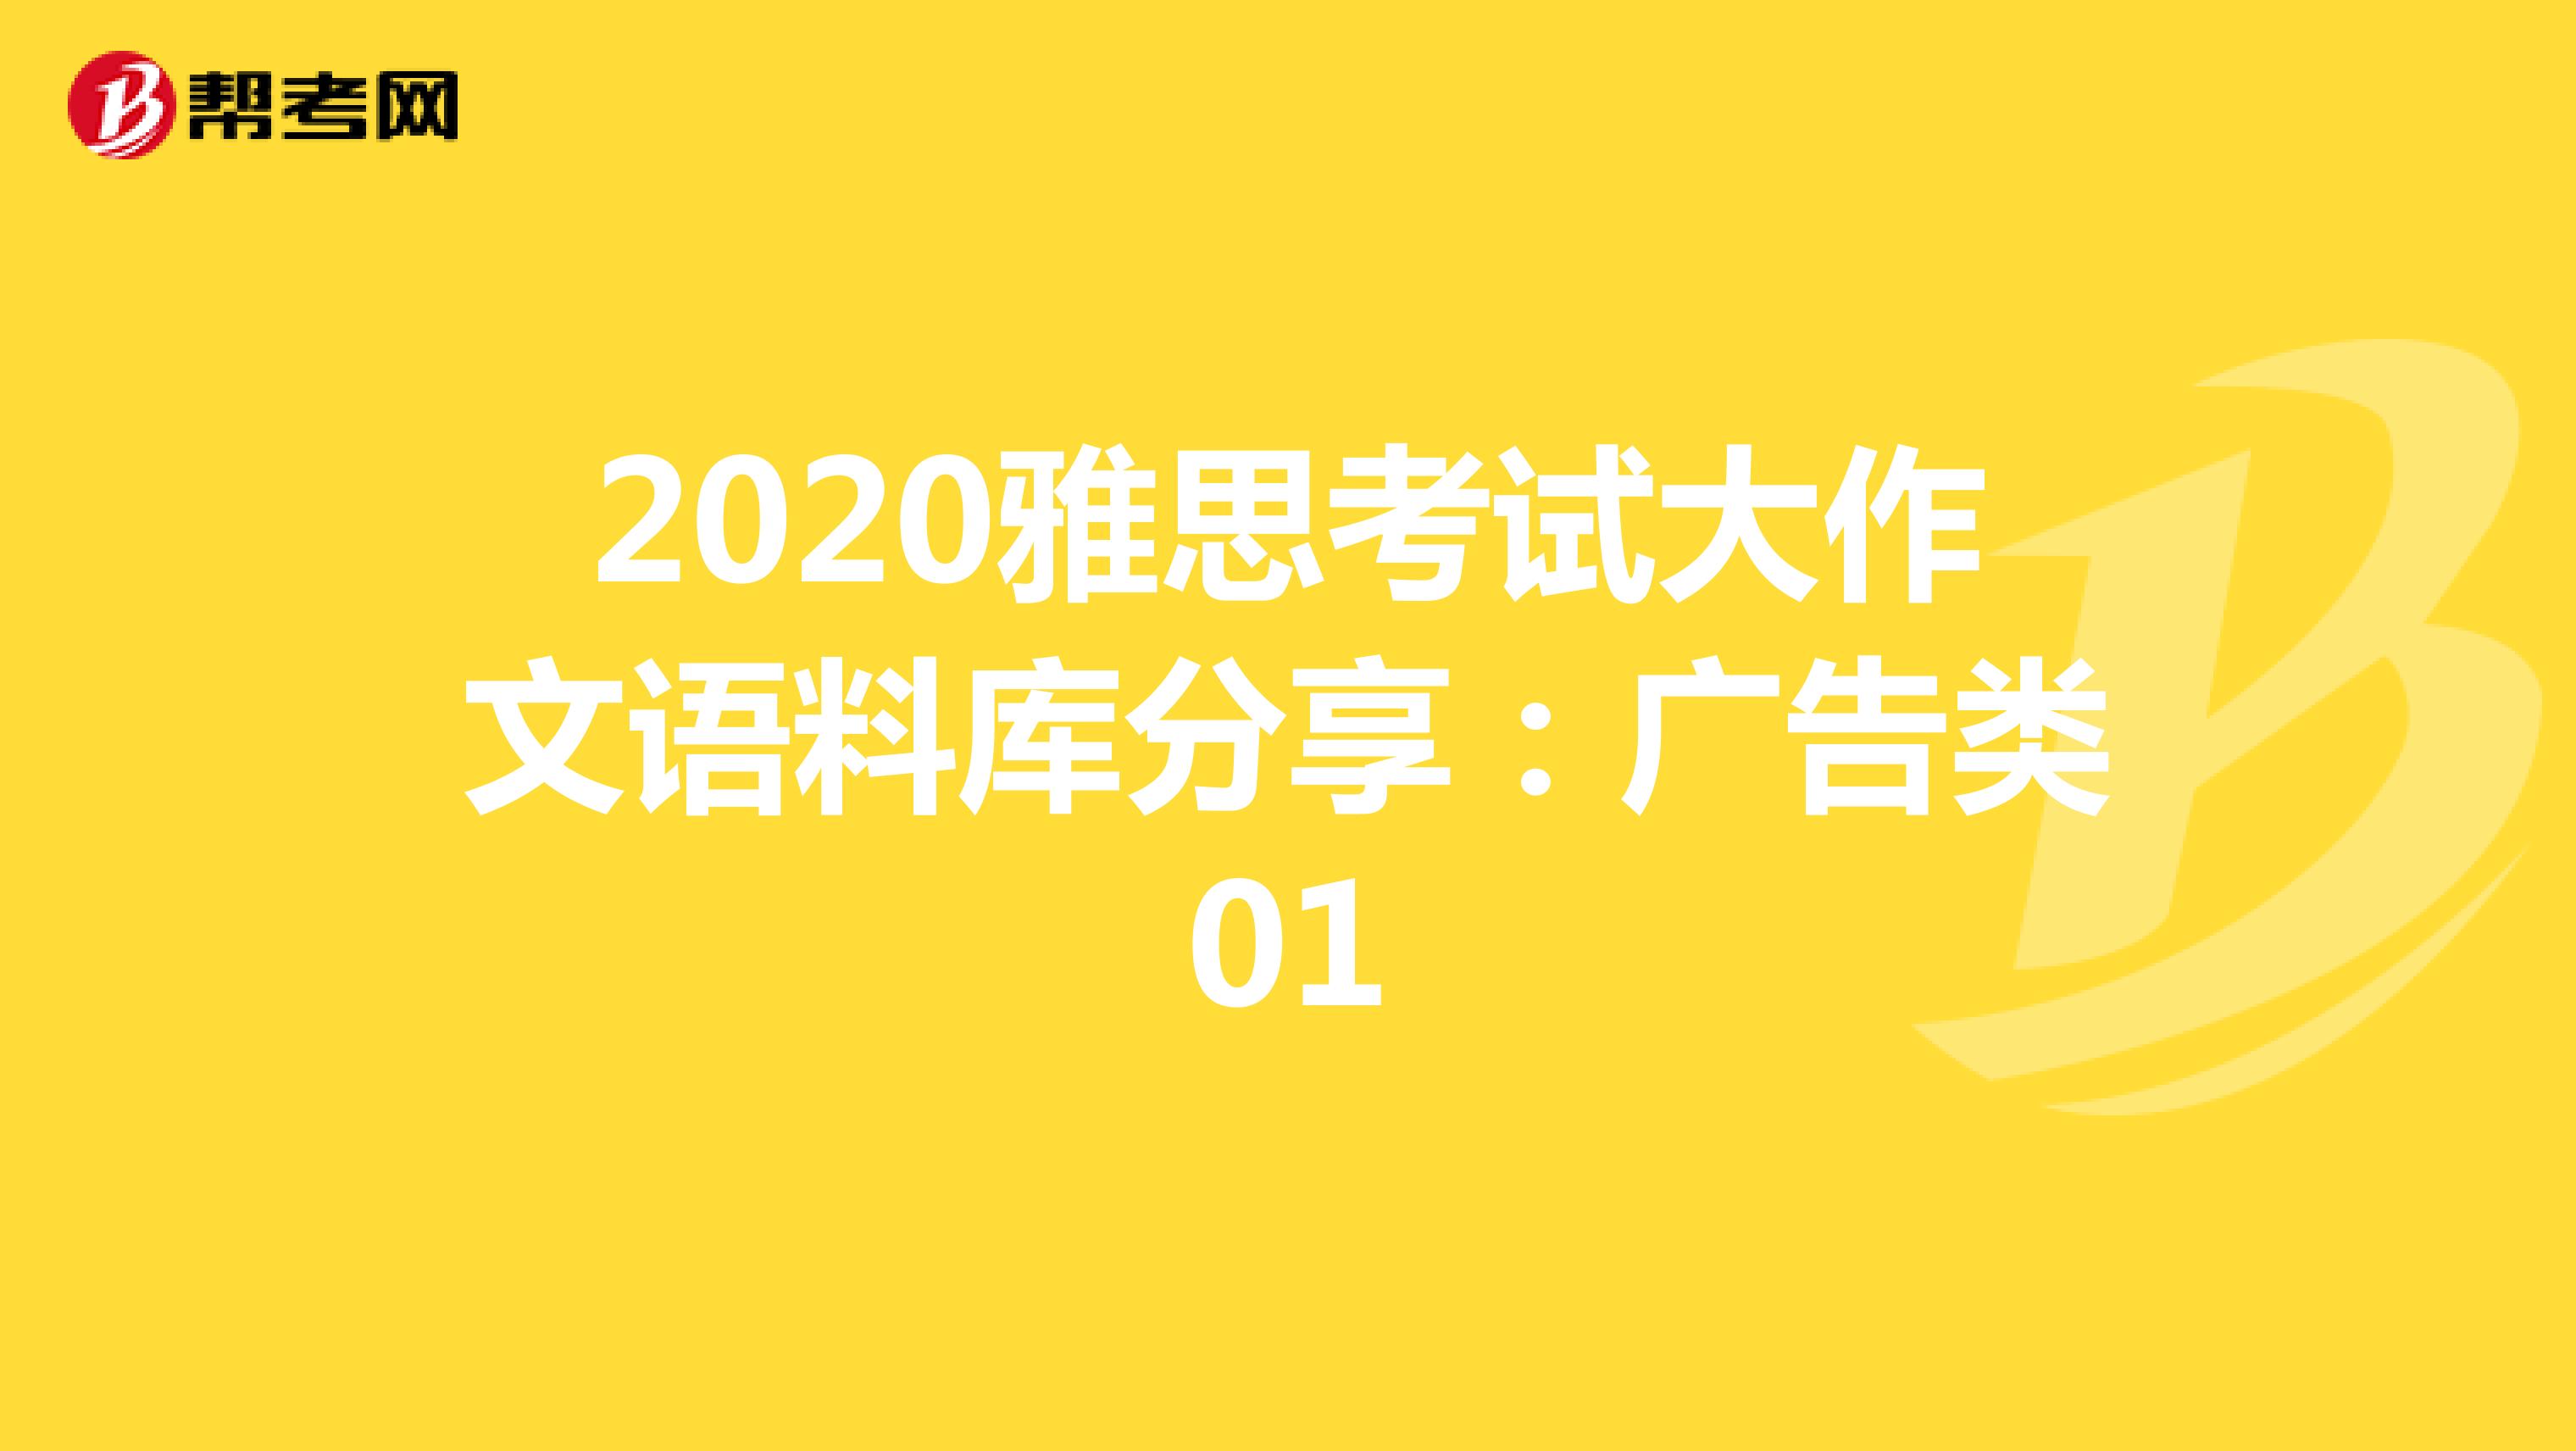 2020雅思考试大作文语料库分享：广告类01